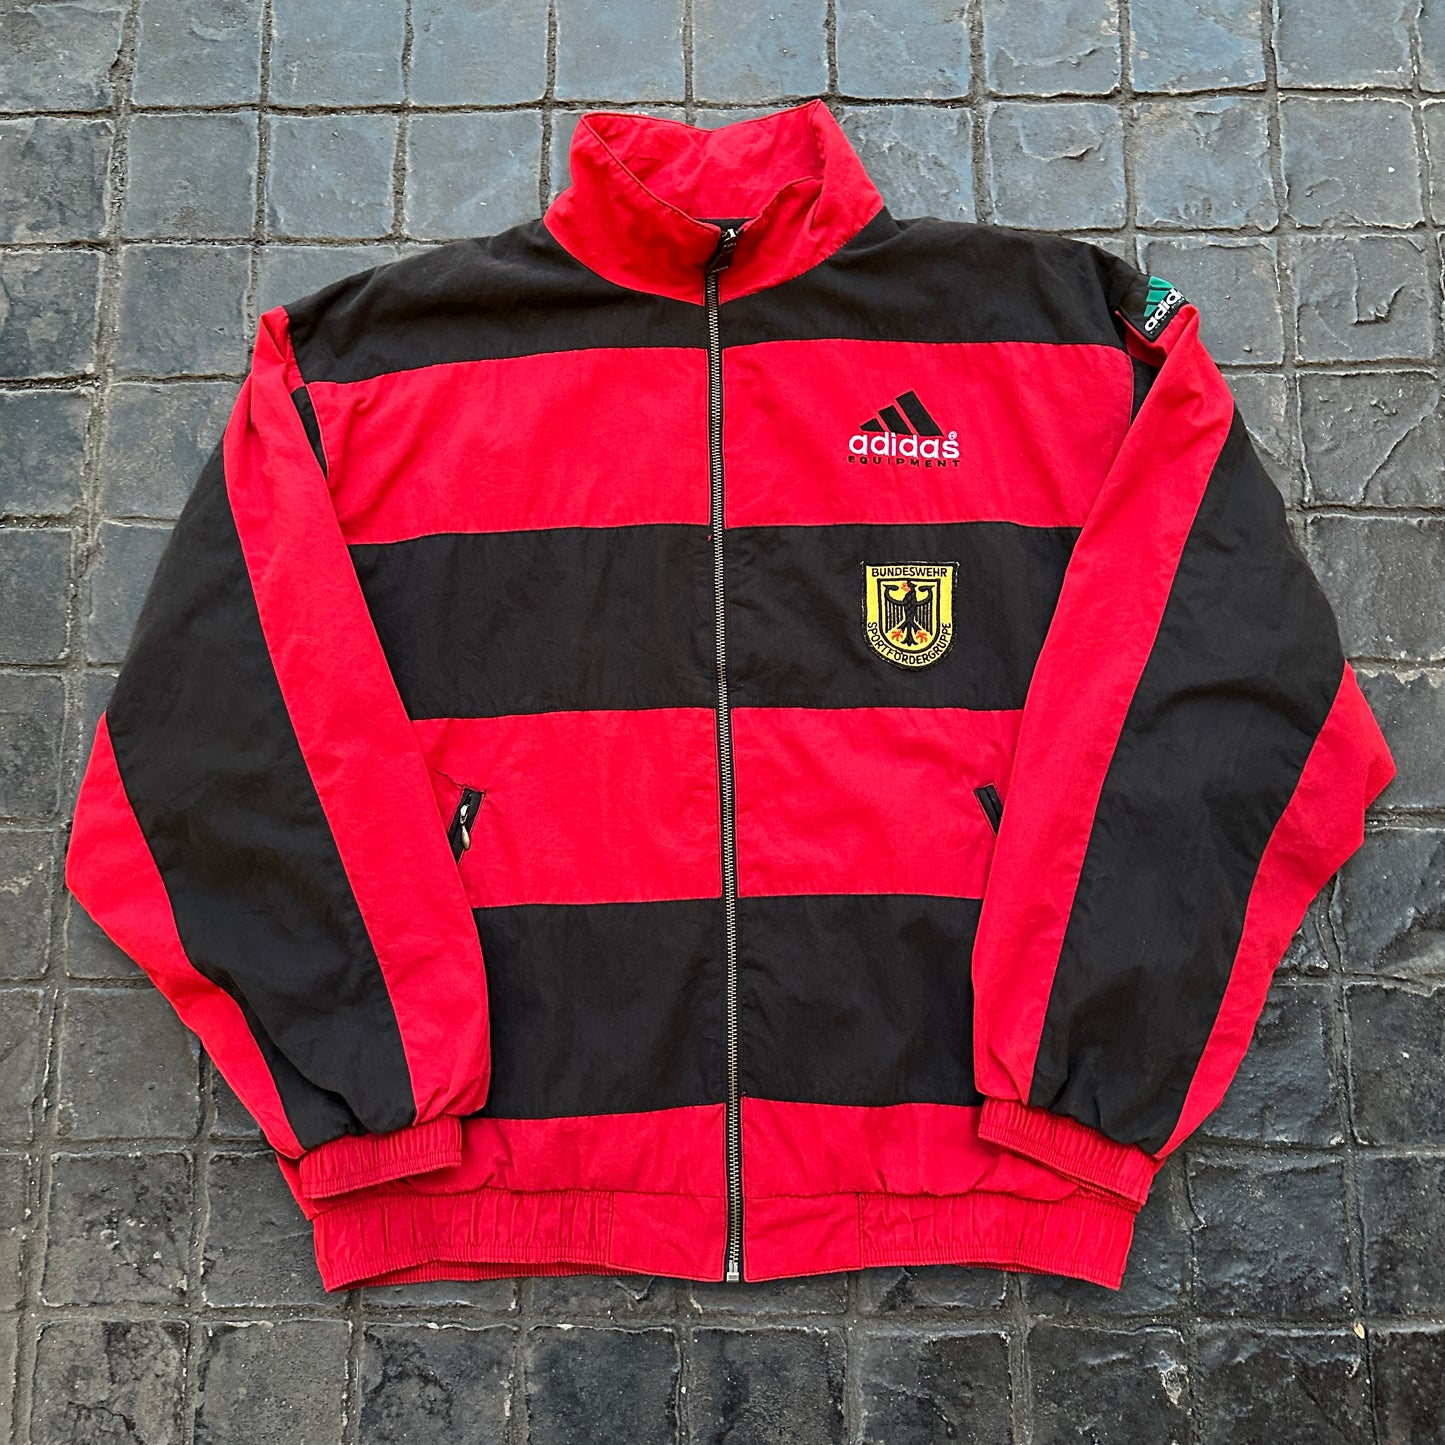 Vintage Adidas Equipment 90's x Deutschland Football Team Red Full-Zip Jacket